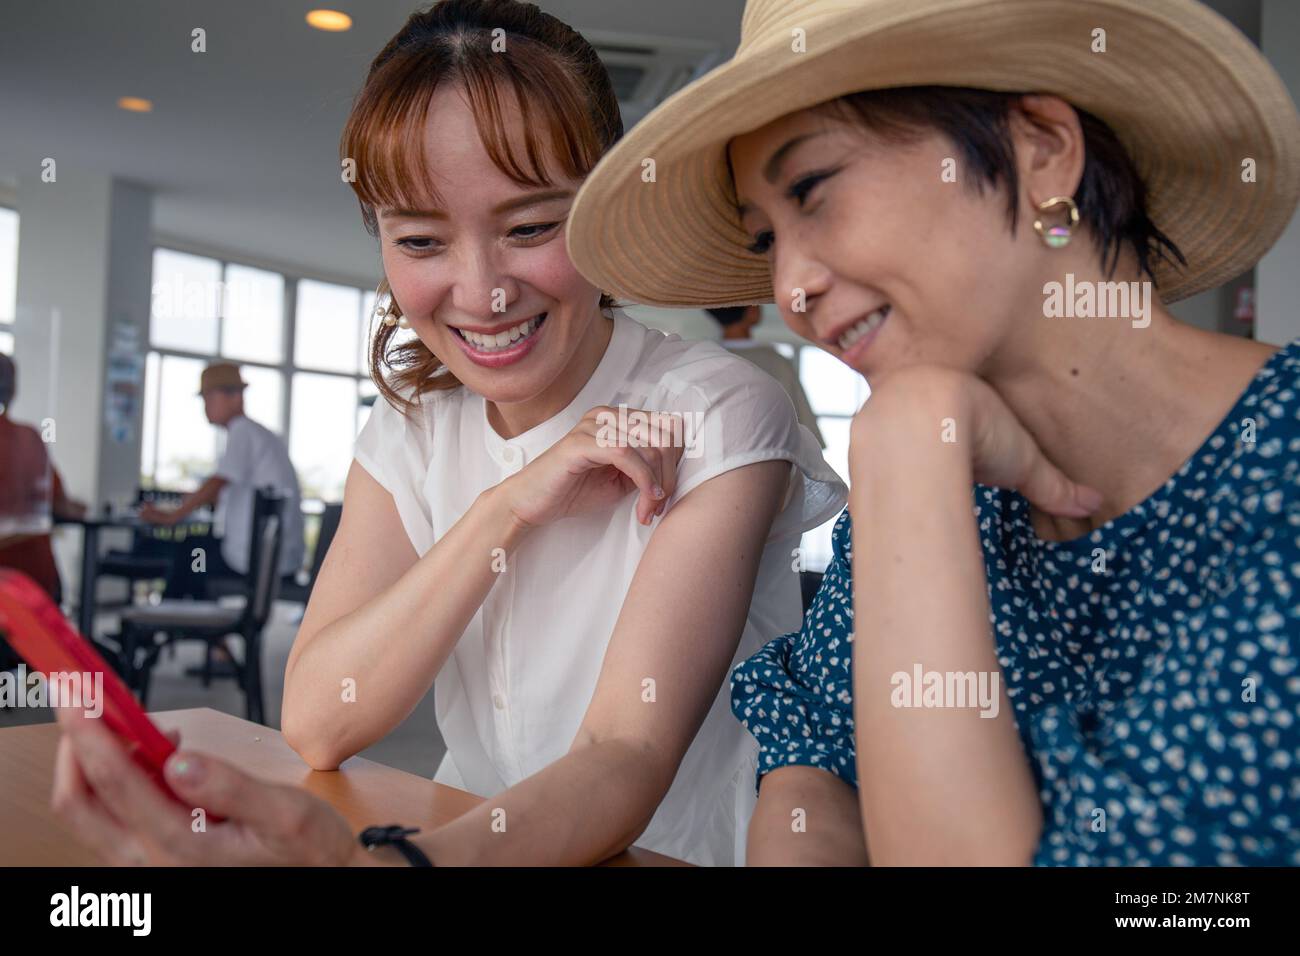 Dos mujeres japonesas maduras, amigas al lado del otro, sentadas mirando la pantalla de un teléfono móvil. Foto de stock